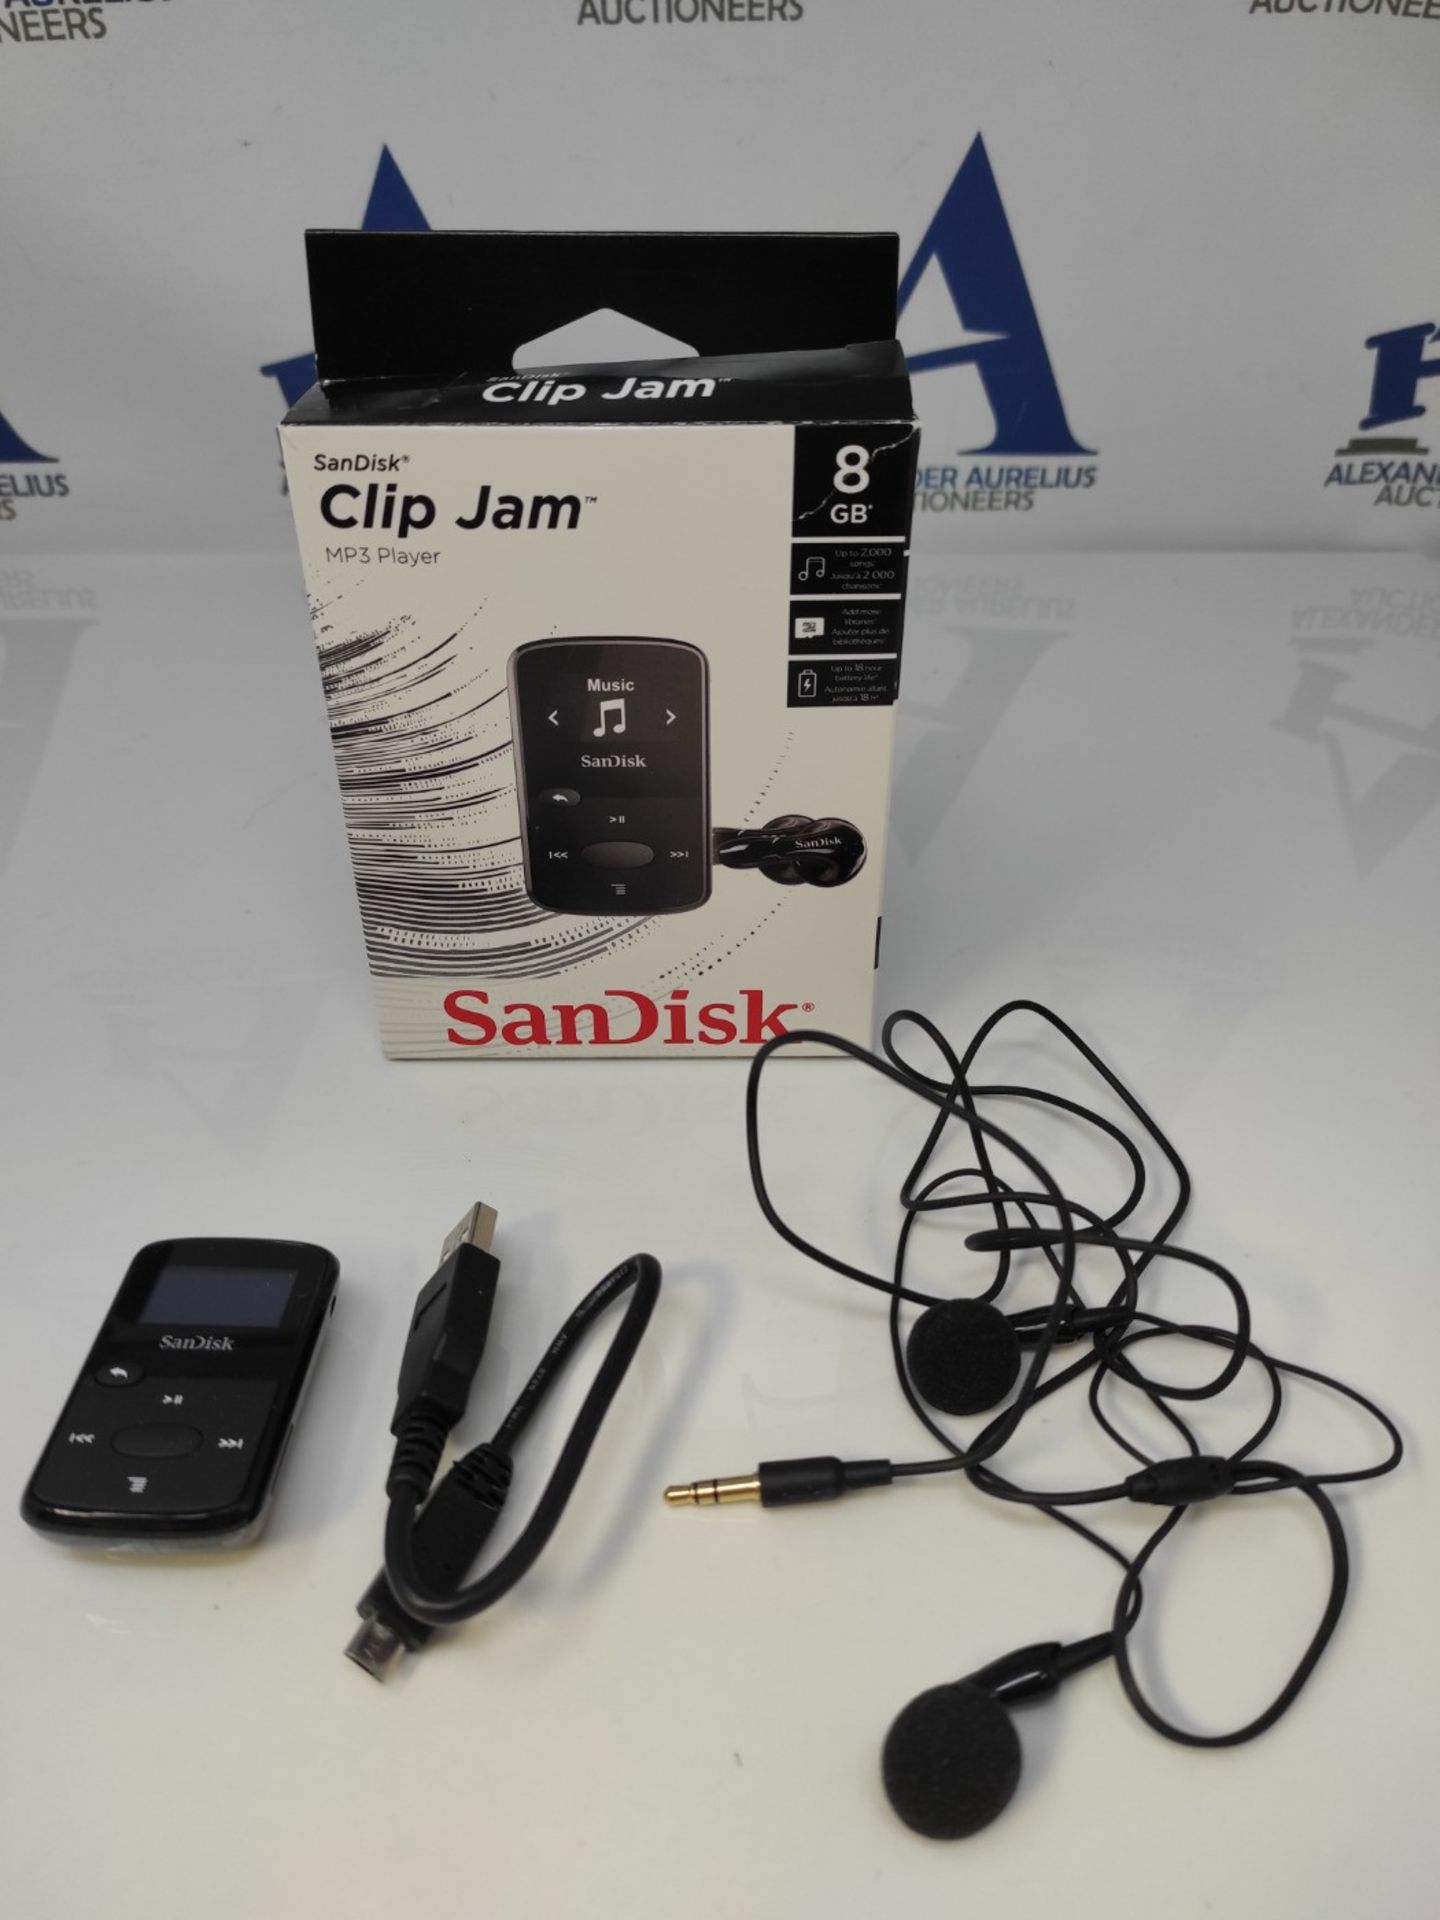 SanDisk Clip Jam 8GB MP3 Player - Black - Image 2 of 2